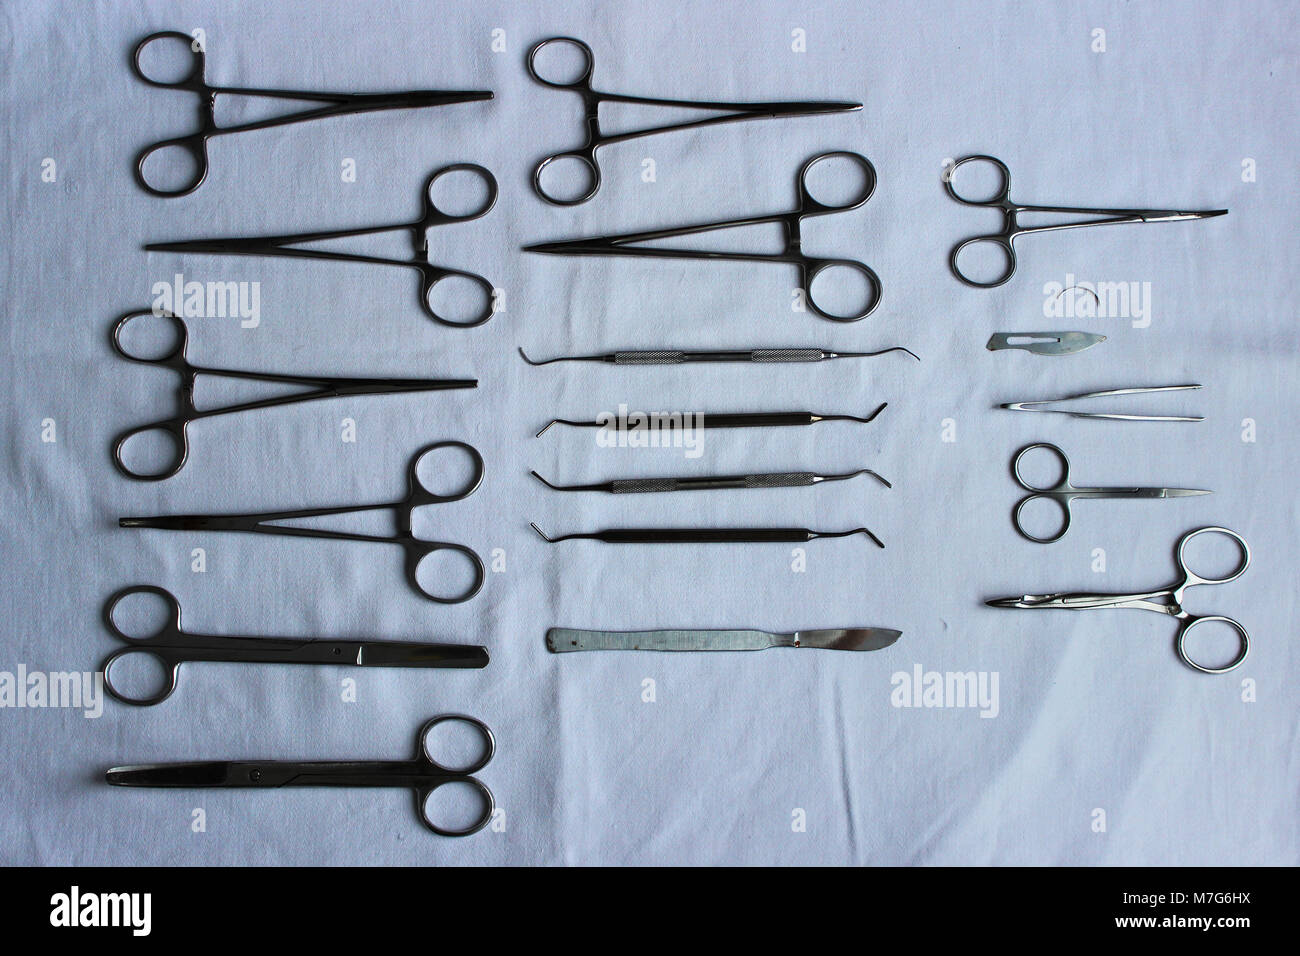 Les instruments chirurgicaux et les outils y compris les scalpels, les  pinces à épiler et disposés disposés sur un tissu bleu après lavage à sec  pour une chirurgie clinique vétérinaire Photo Stock -